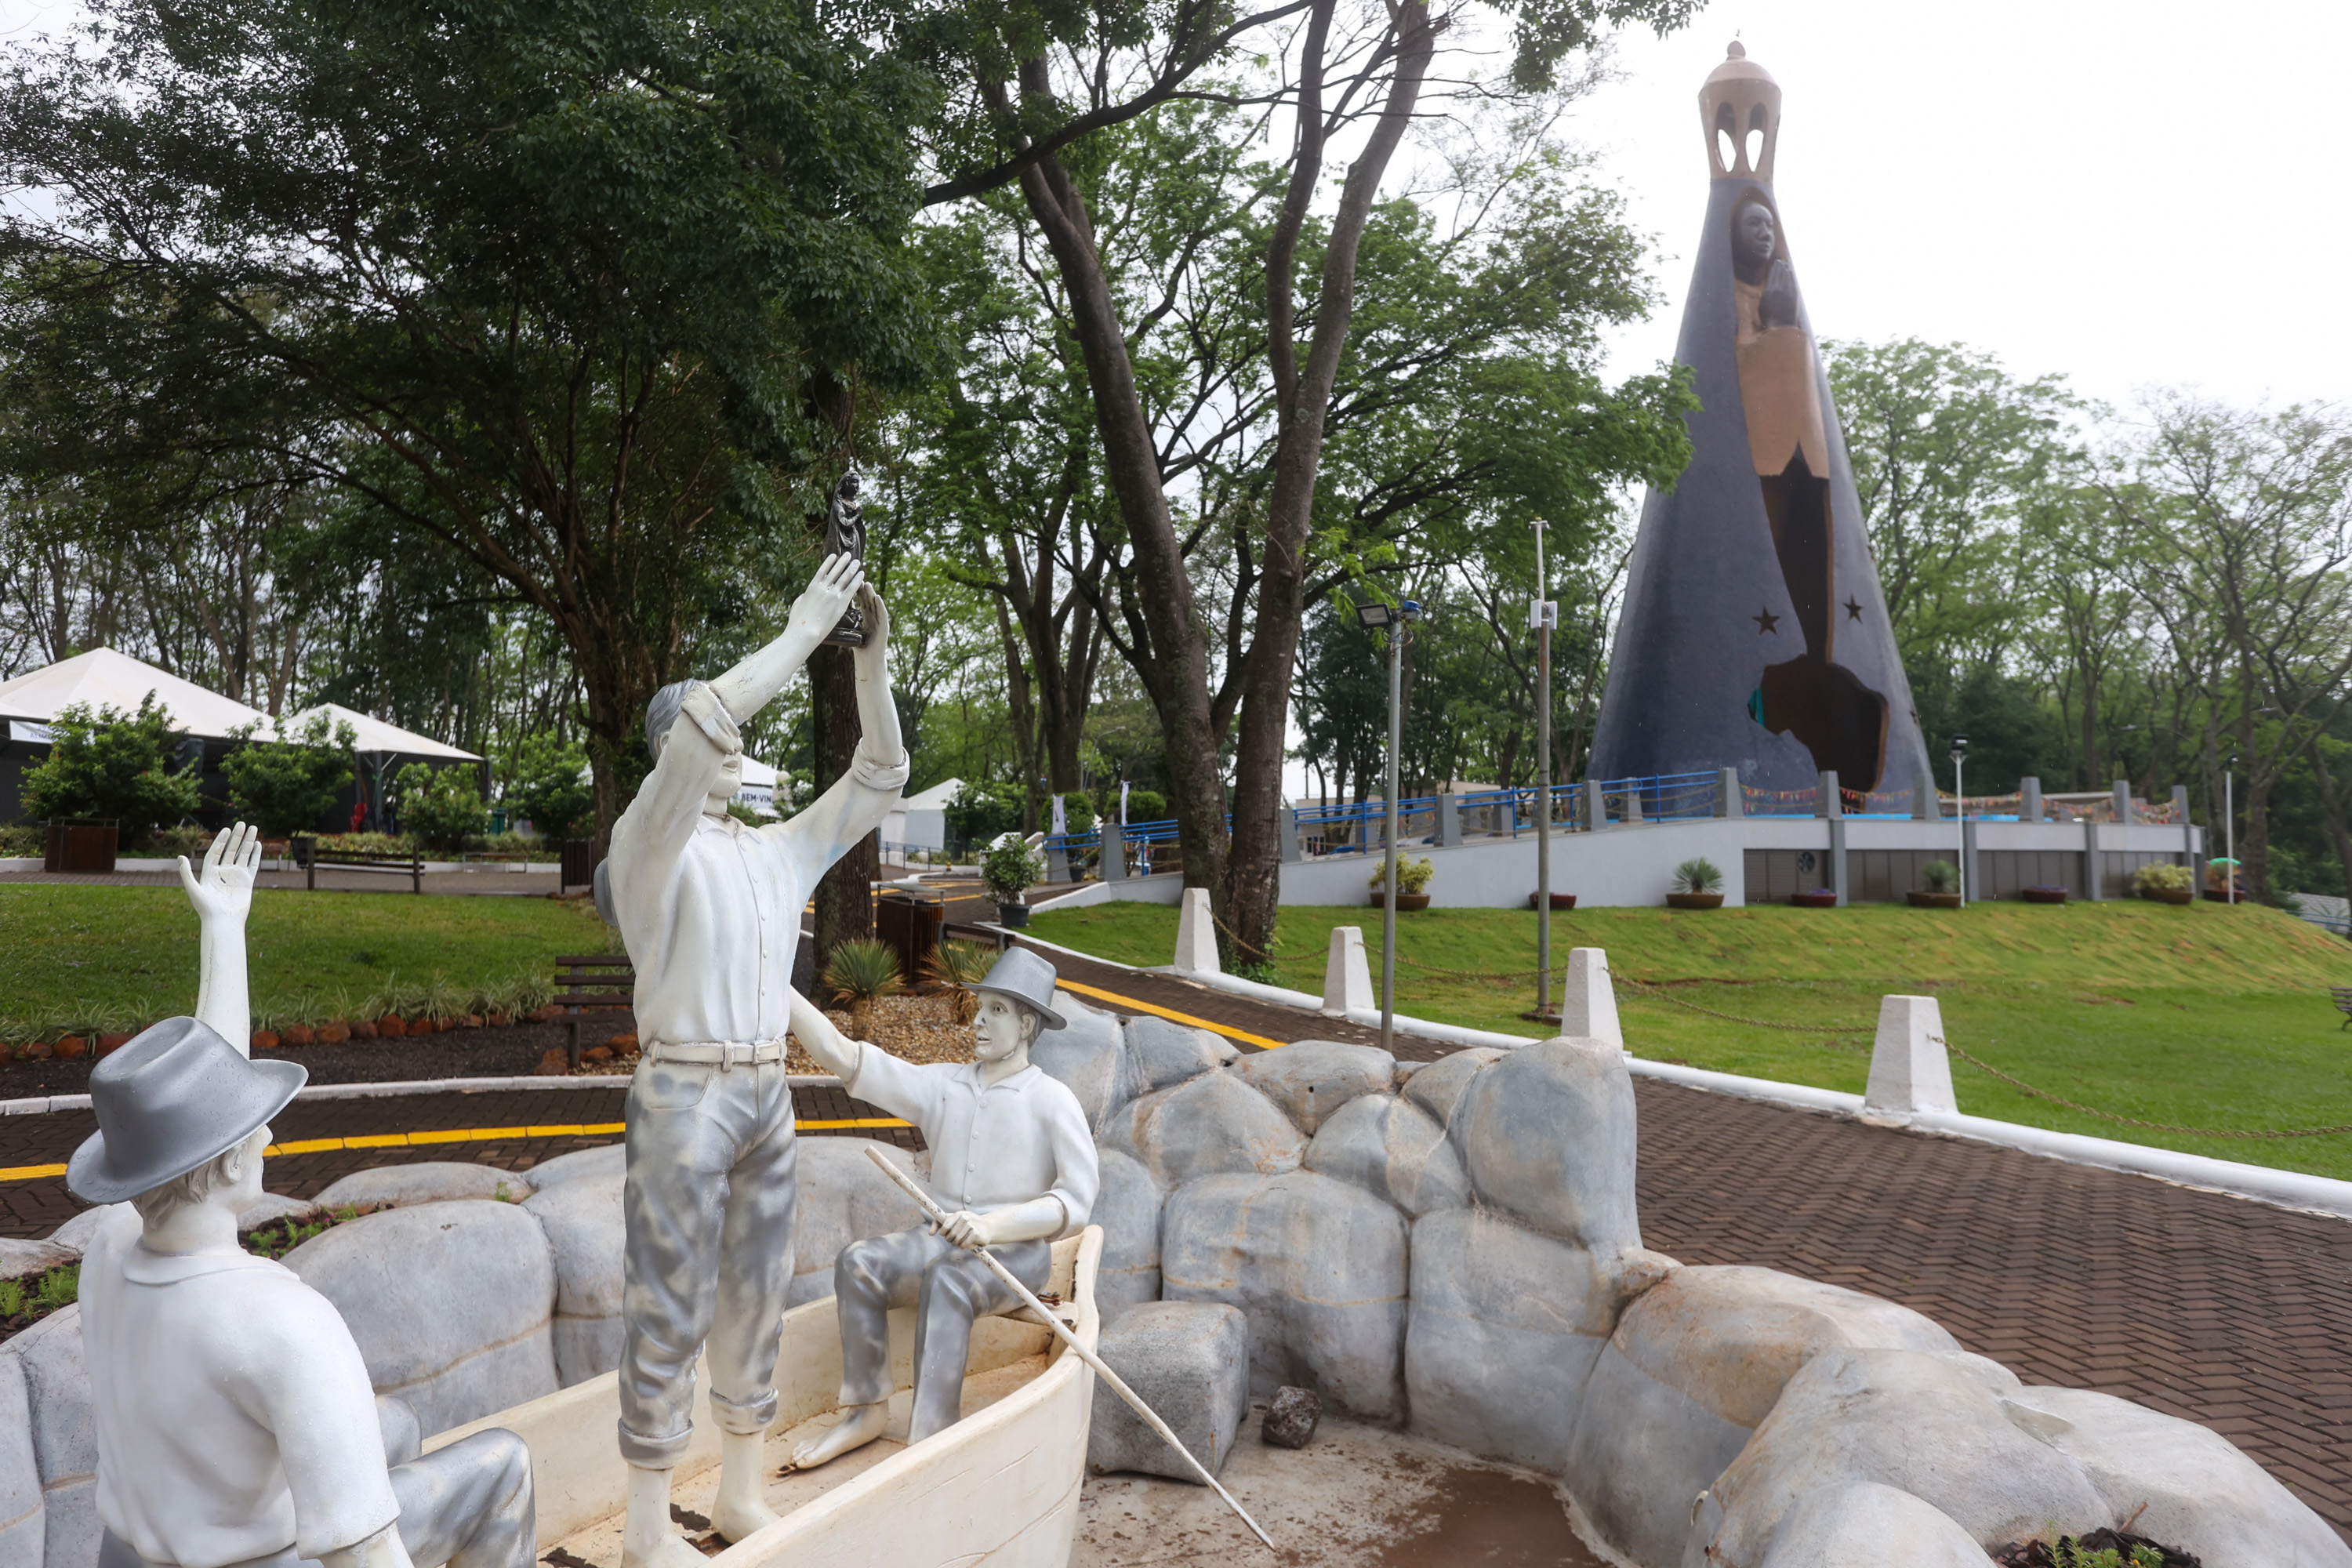 Turismo religioso: feriado é boa oportunidade para visitar santuários pelo Paraná